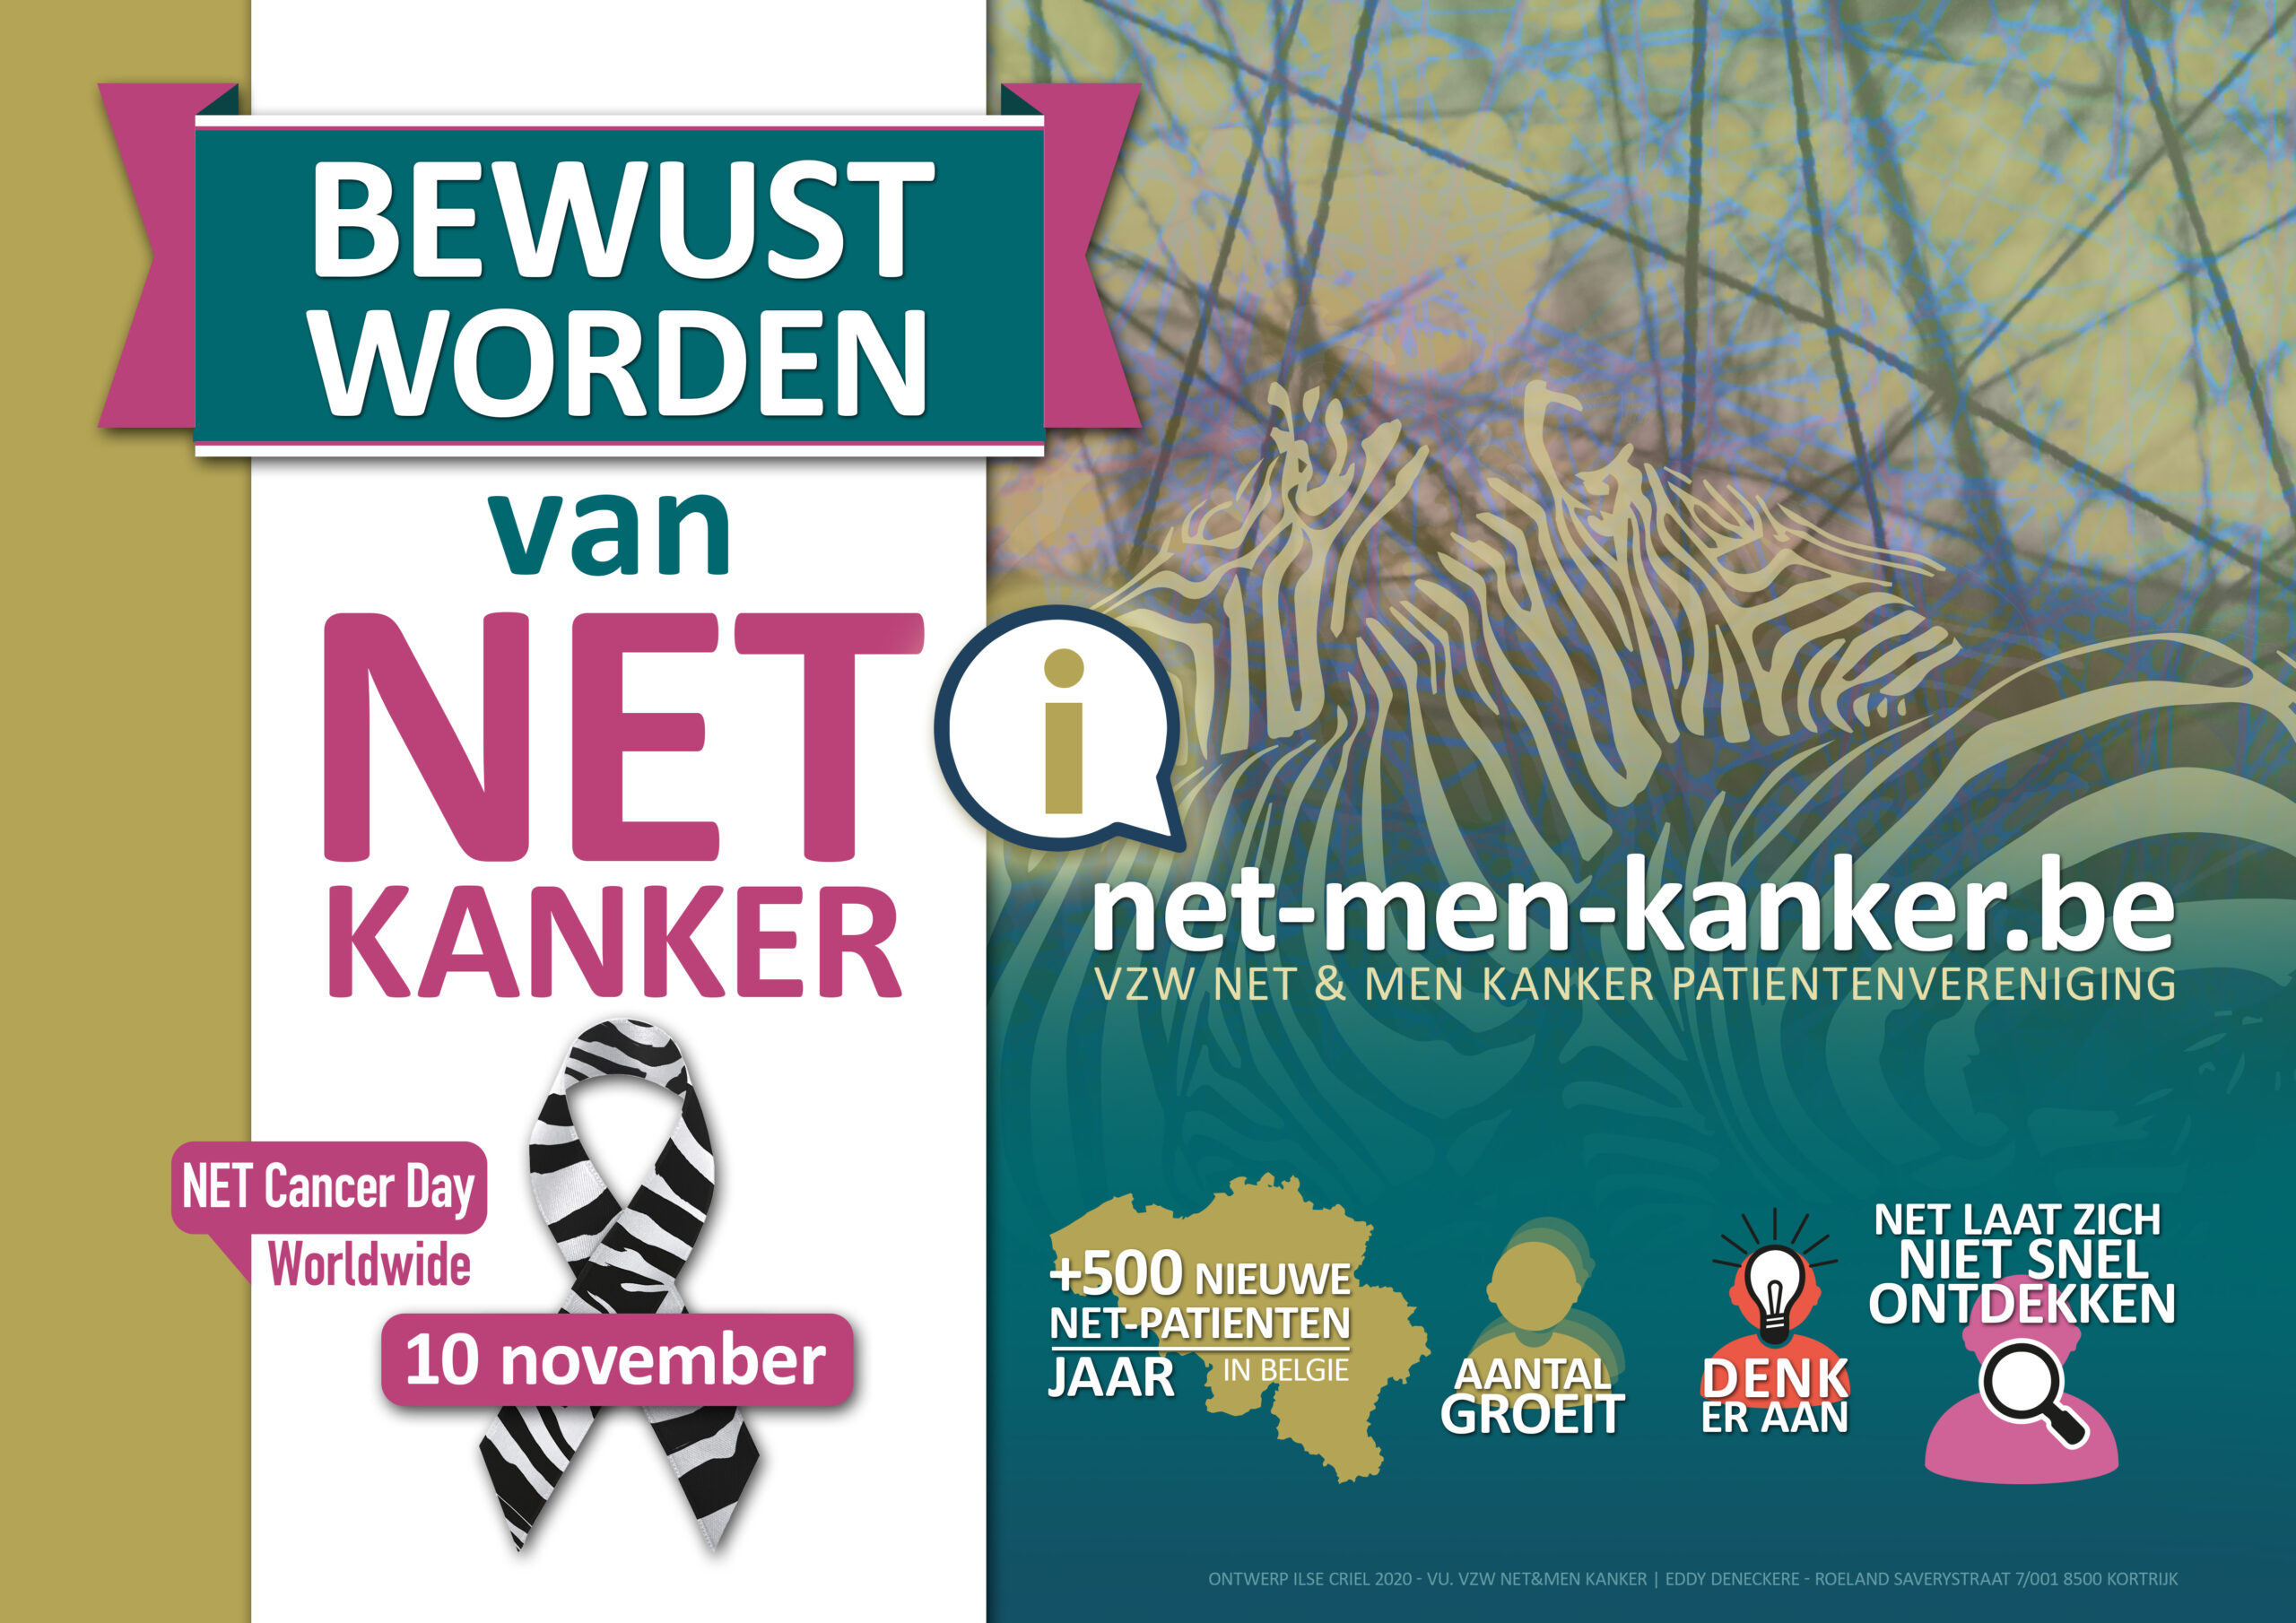 Affiche 'BEWUST WORDEN VAN NET' naar aanleiding van World NET cancer Day op 10 november